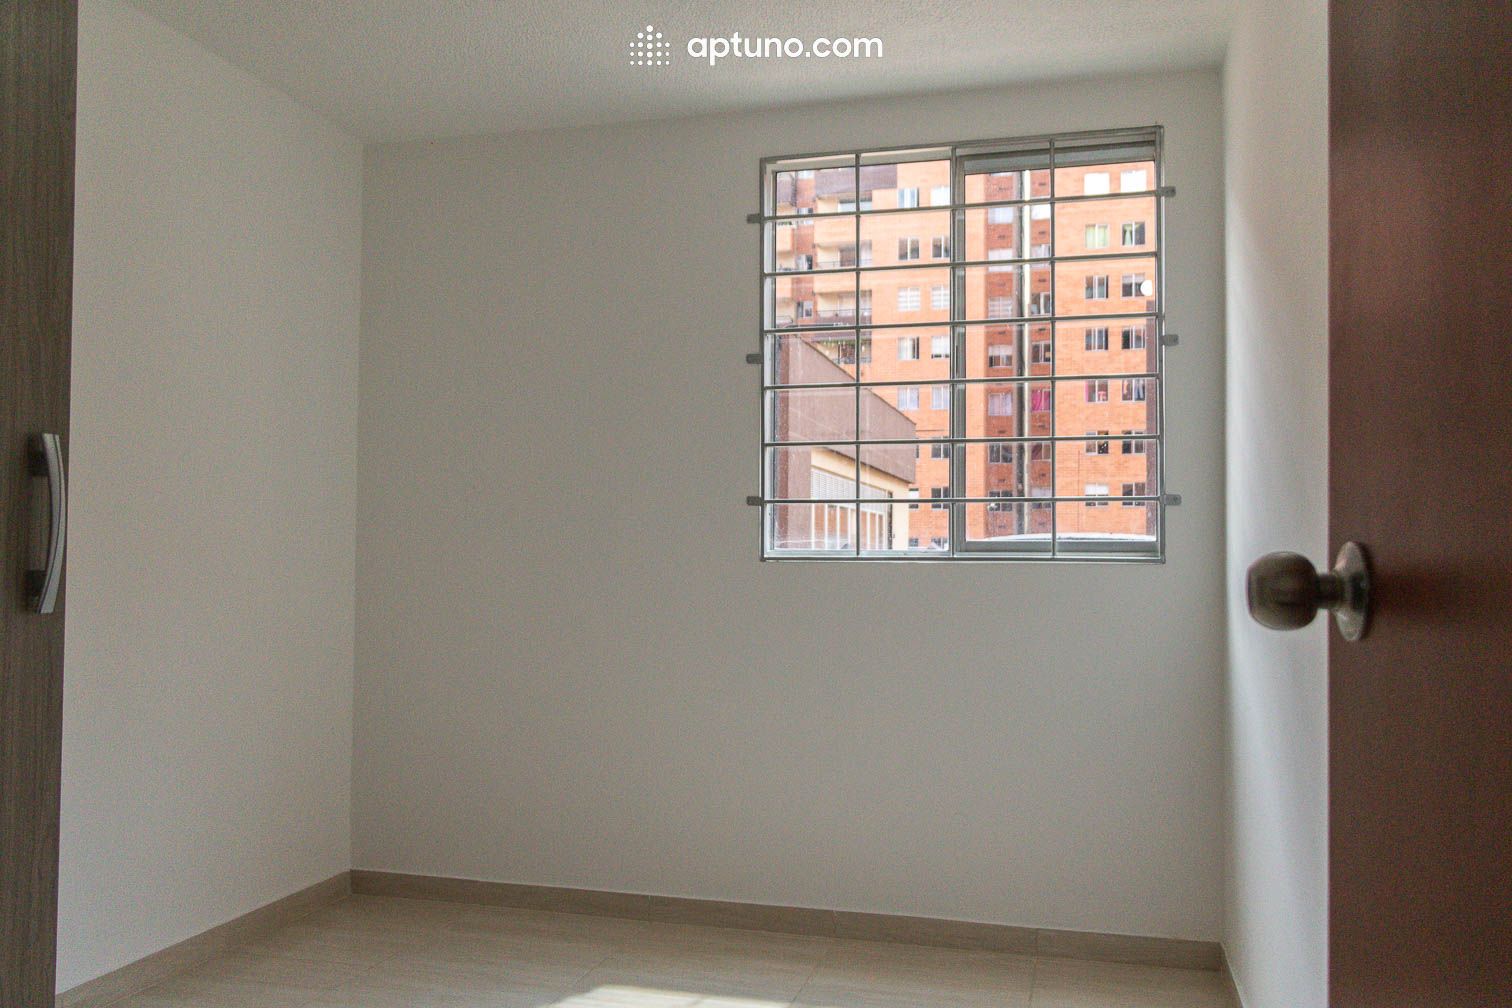 Apartamento en arriendo Madrid 61 m² - $ 850.000,00